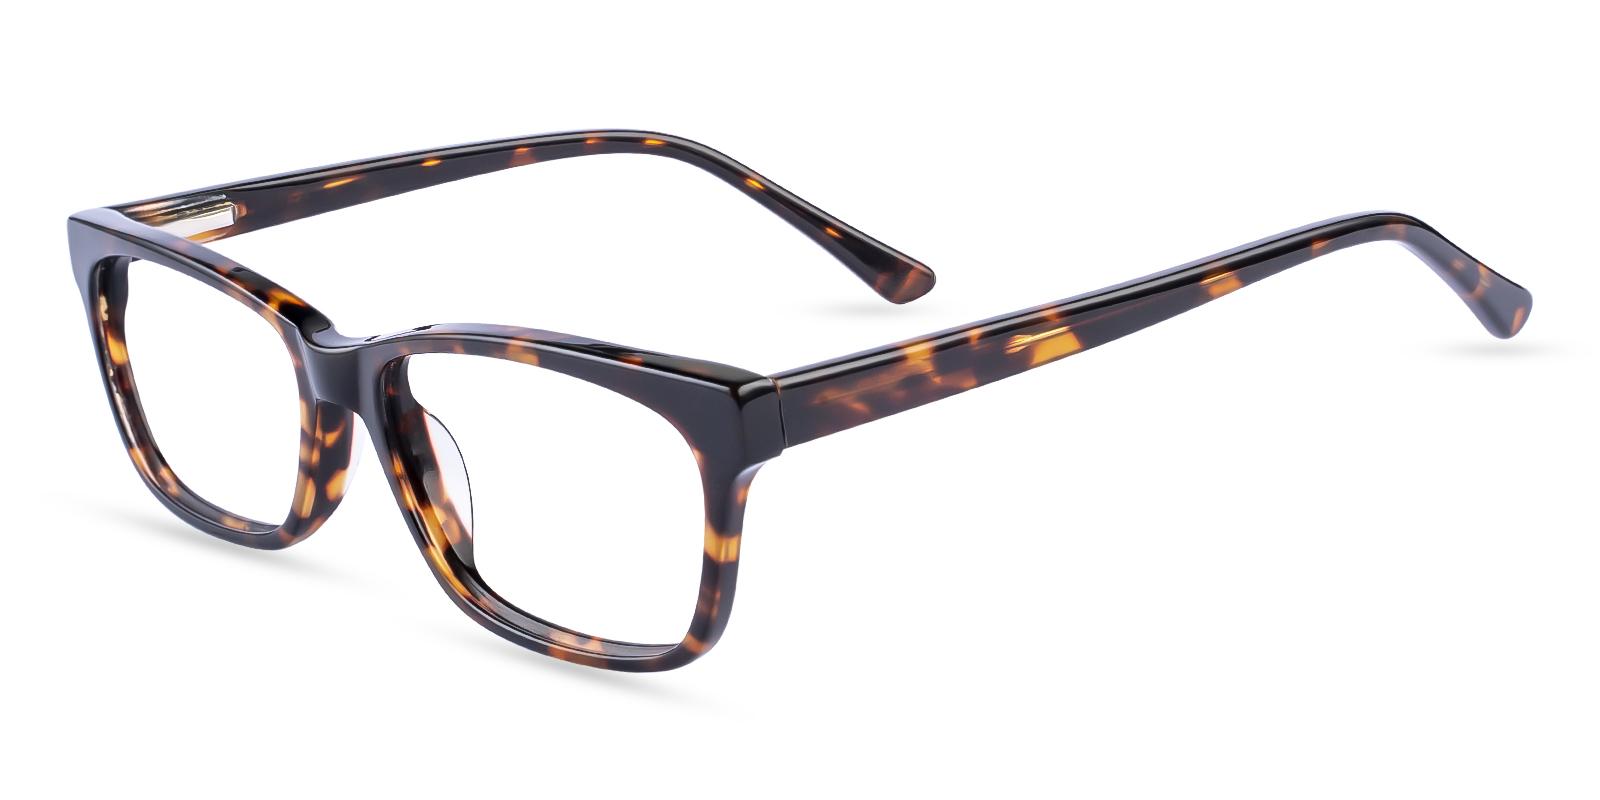 Demain Tortoise Acetate Eyeglasses , SpringHinges , UniversalBridgeFit Frames from ABBE Glasses